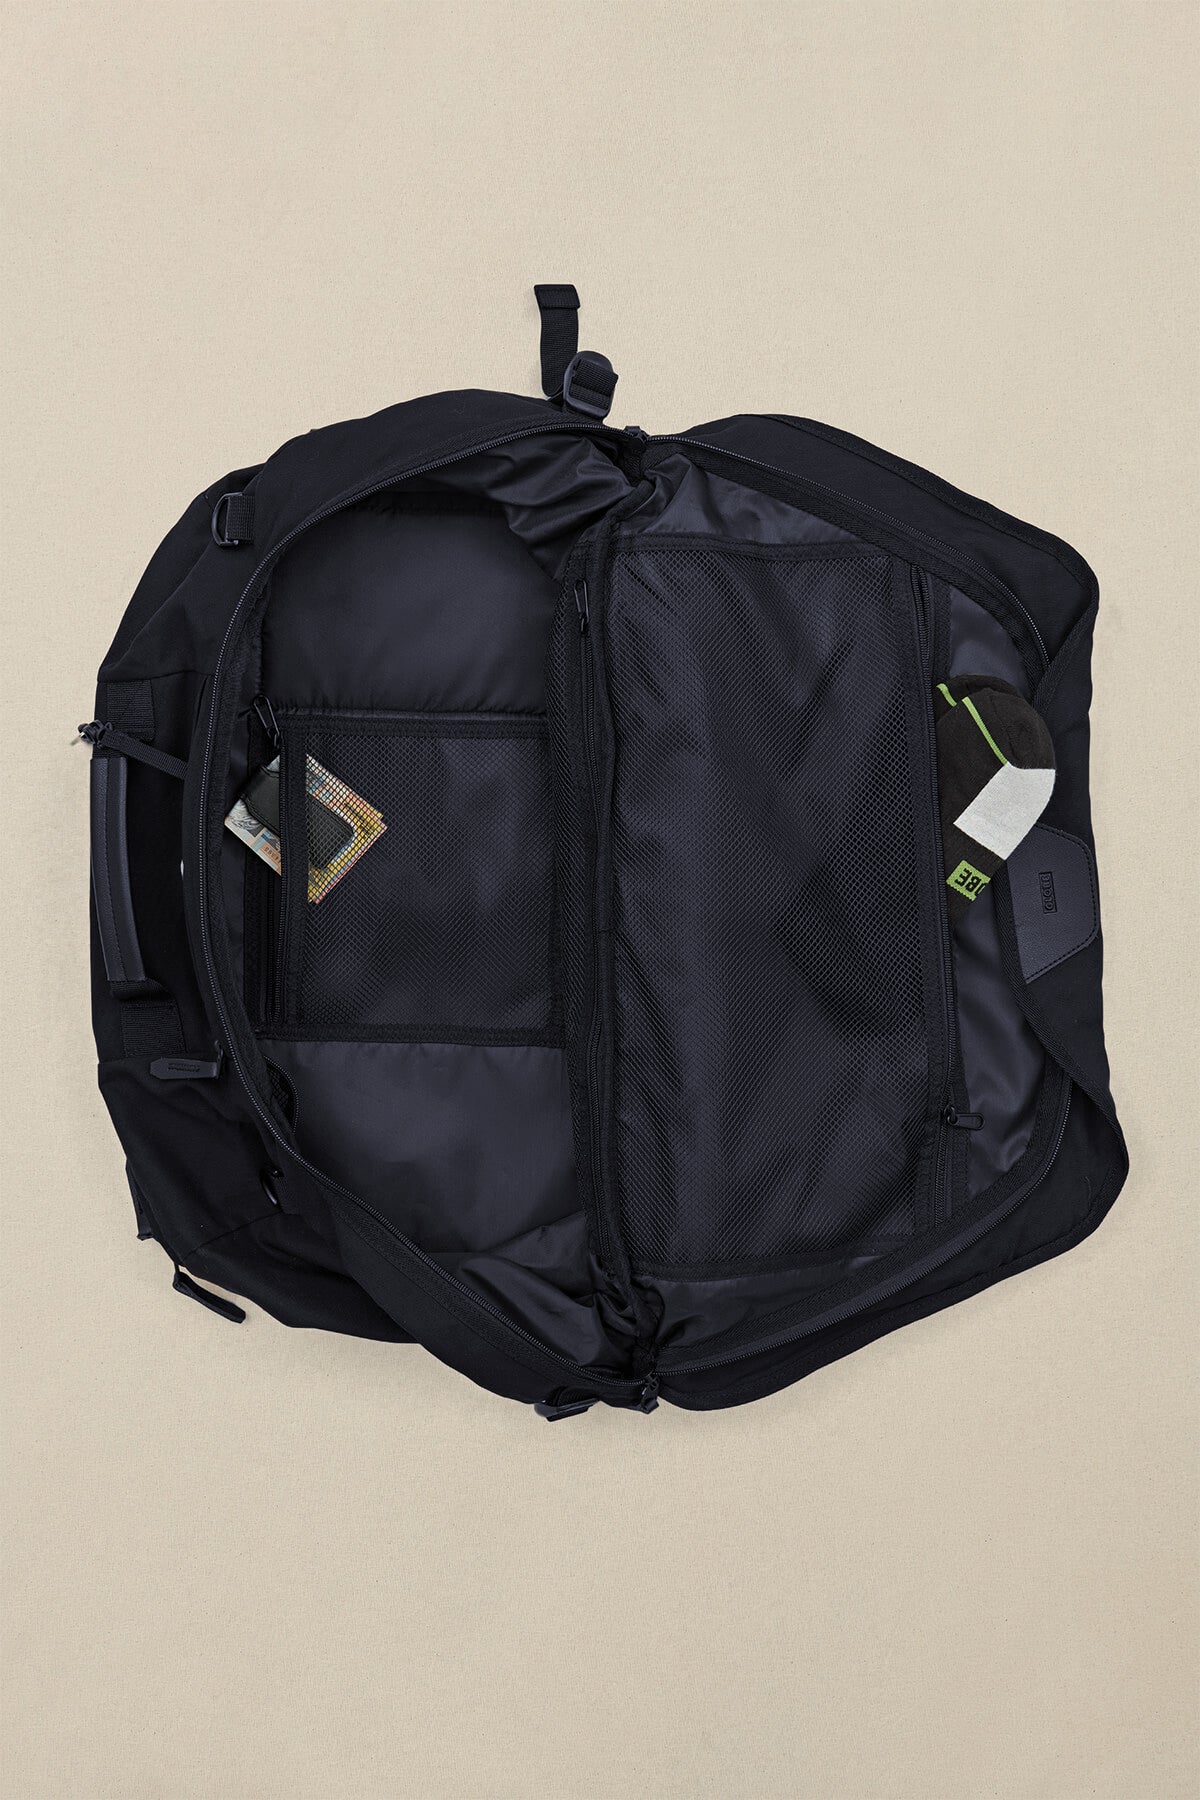 velocity 3 in 1 travel bag black